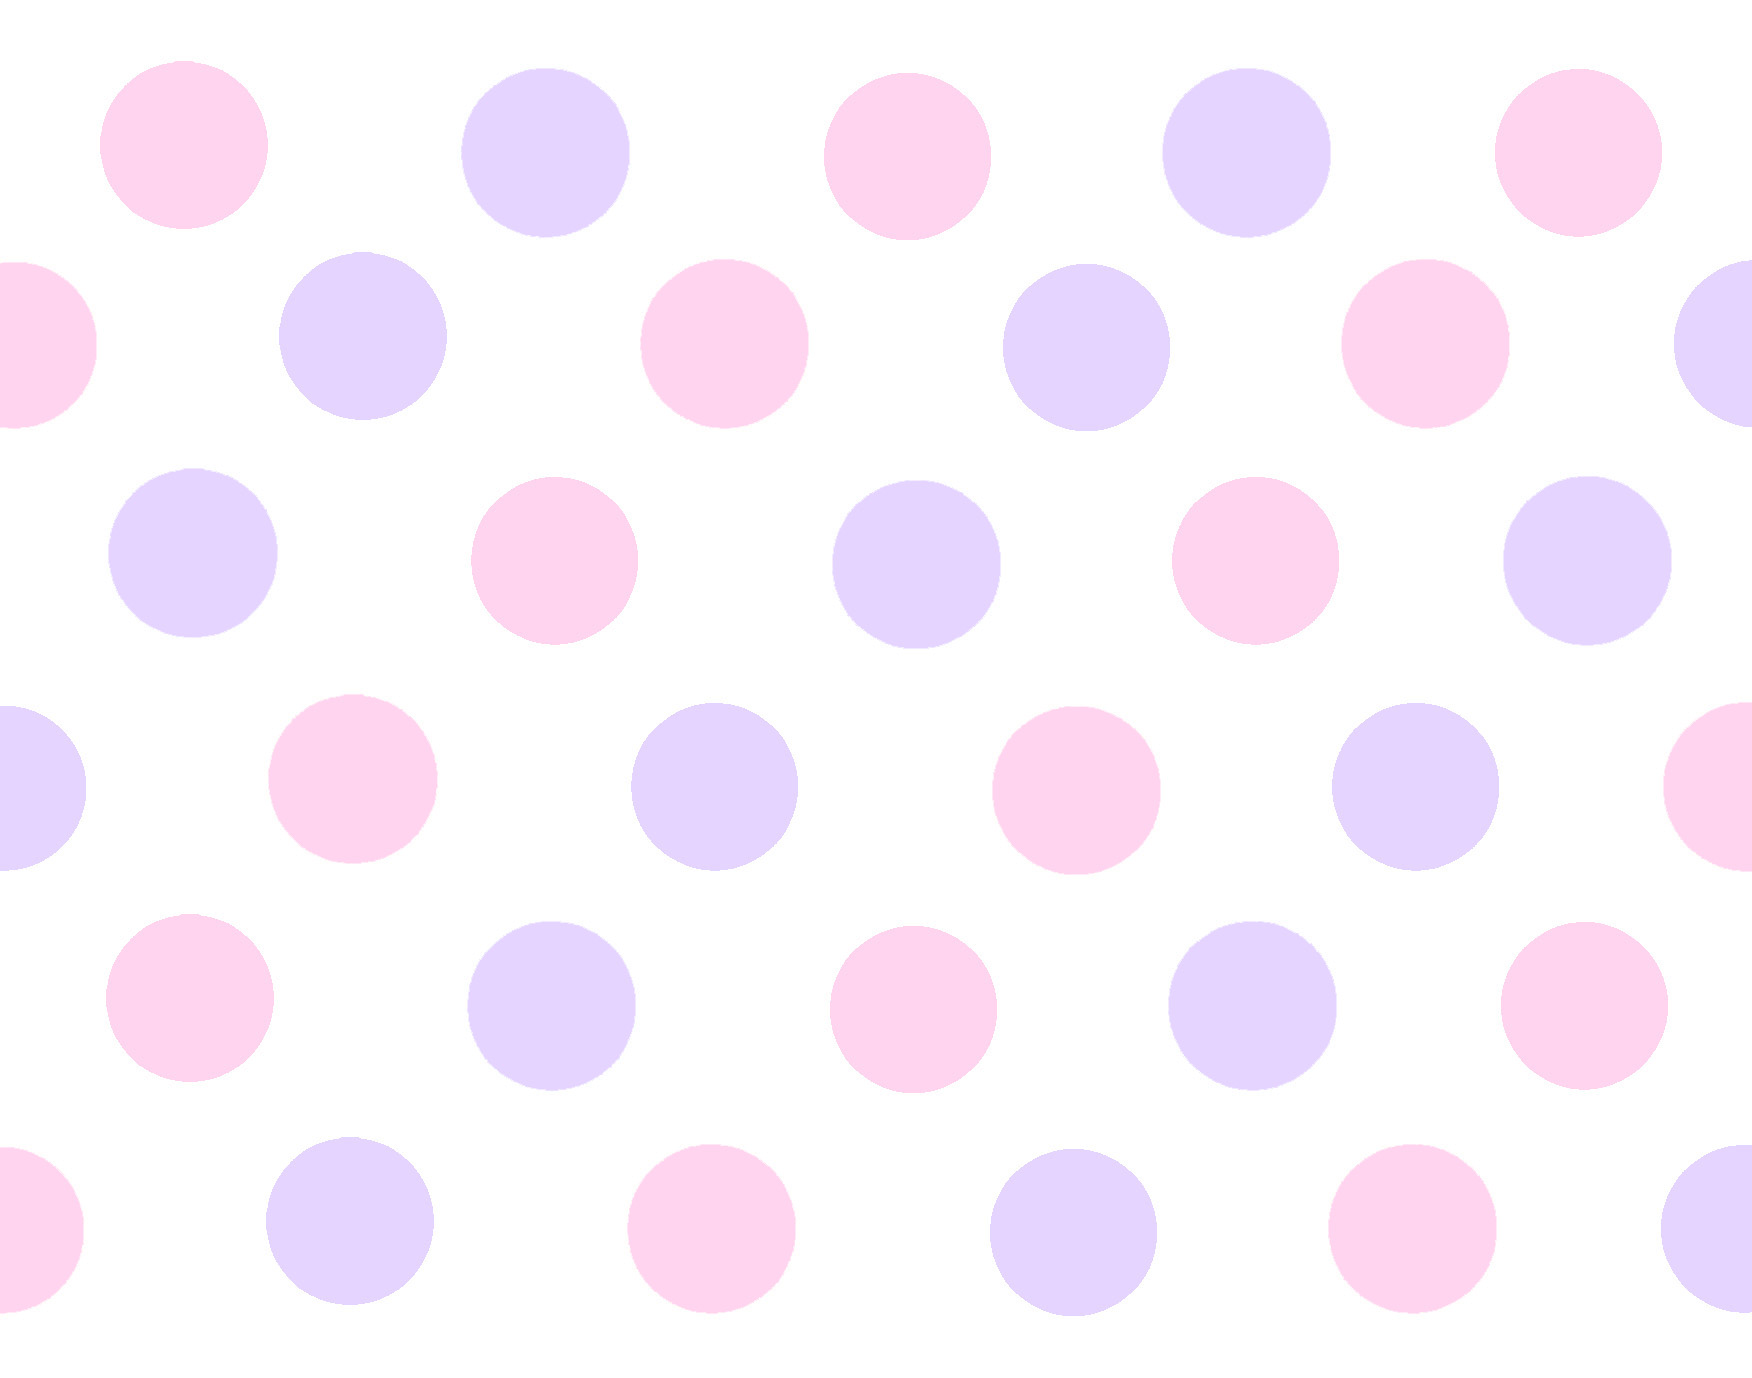 Nice Polka Dot Wallpaper For Desktop